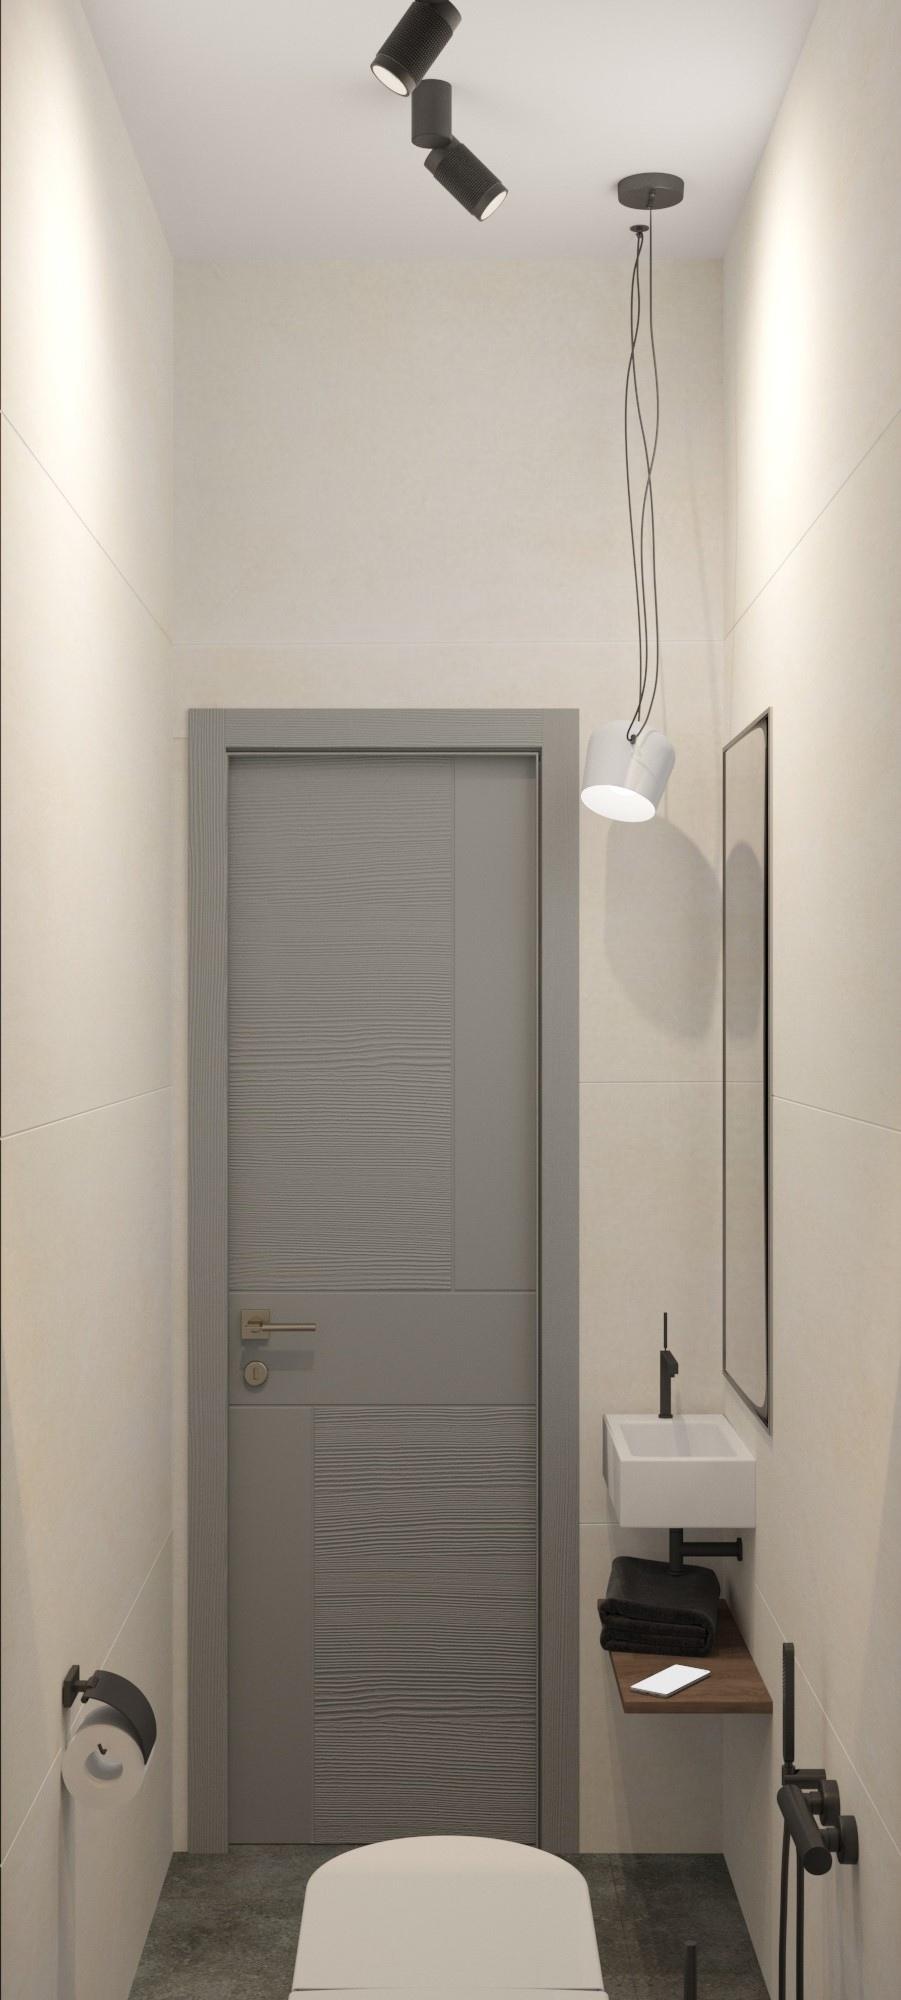 Интерьер ванной cветовыми линиями, подсветкой настенной, подсветкой светодиодной и дверными жалюзи